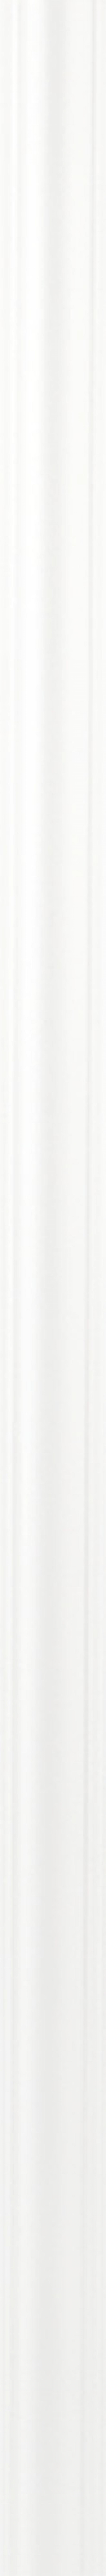 Плинтус потолочный экструдированный полистирол Format 05509Е белый 39х39х2000 мм